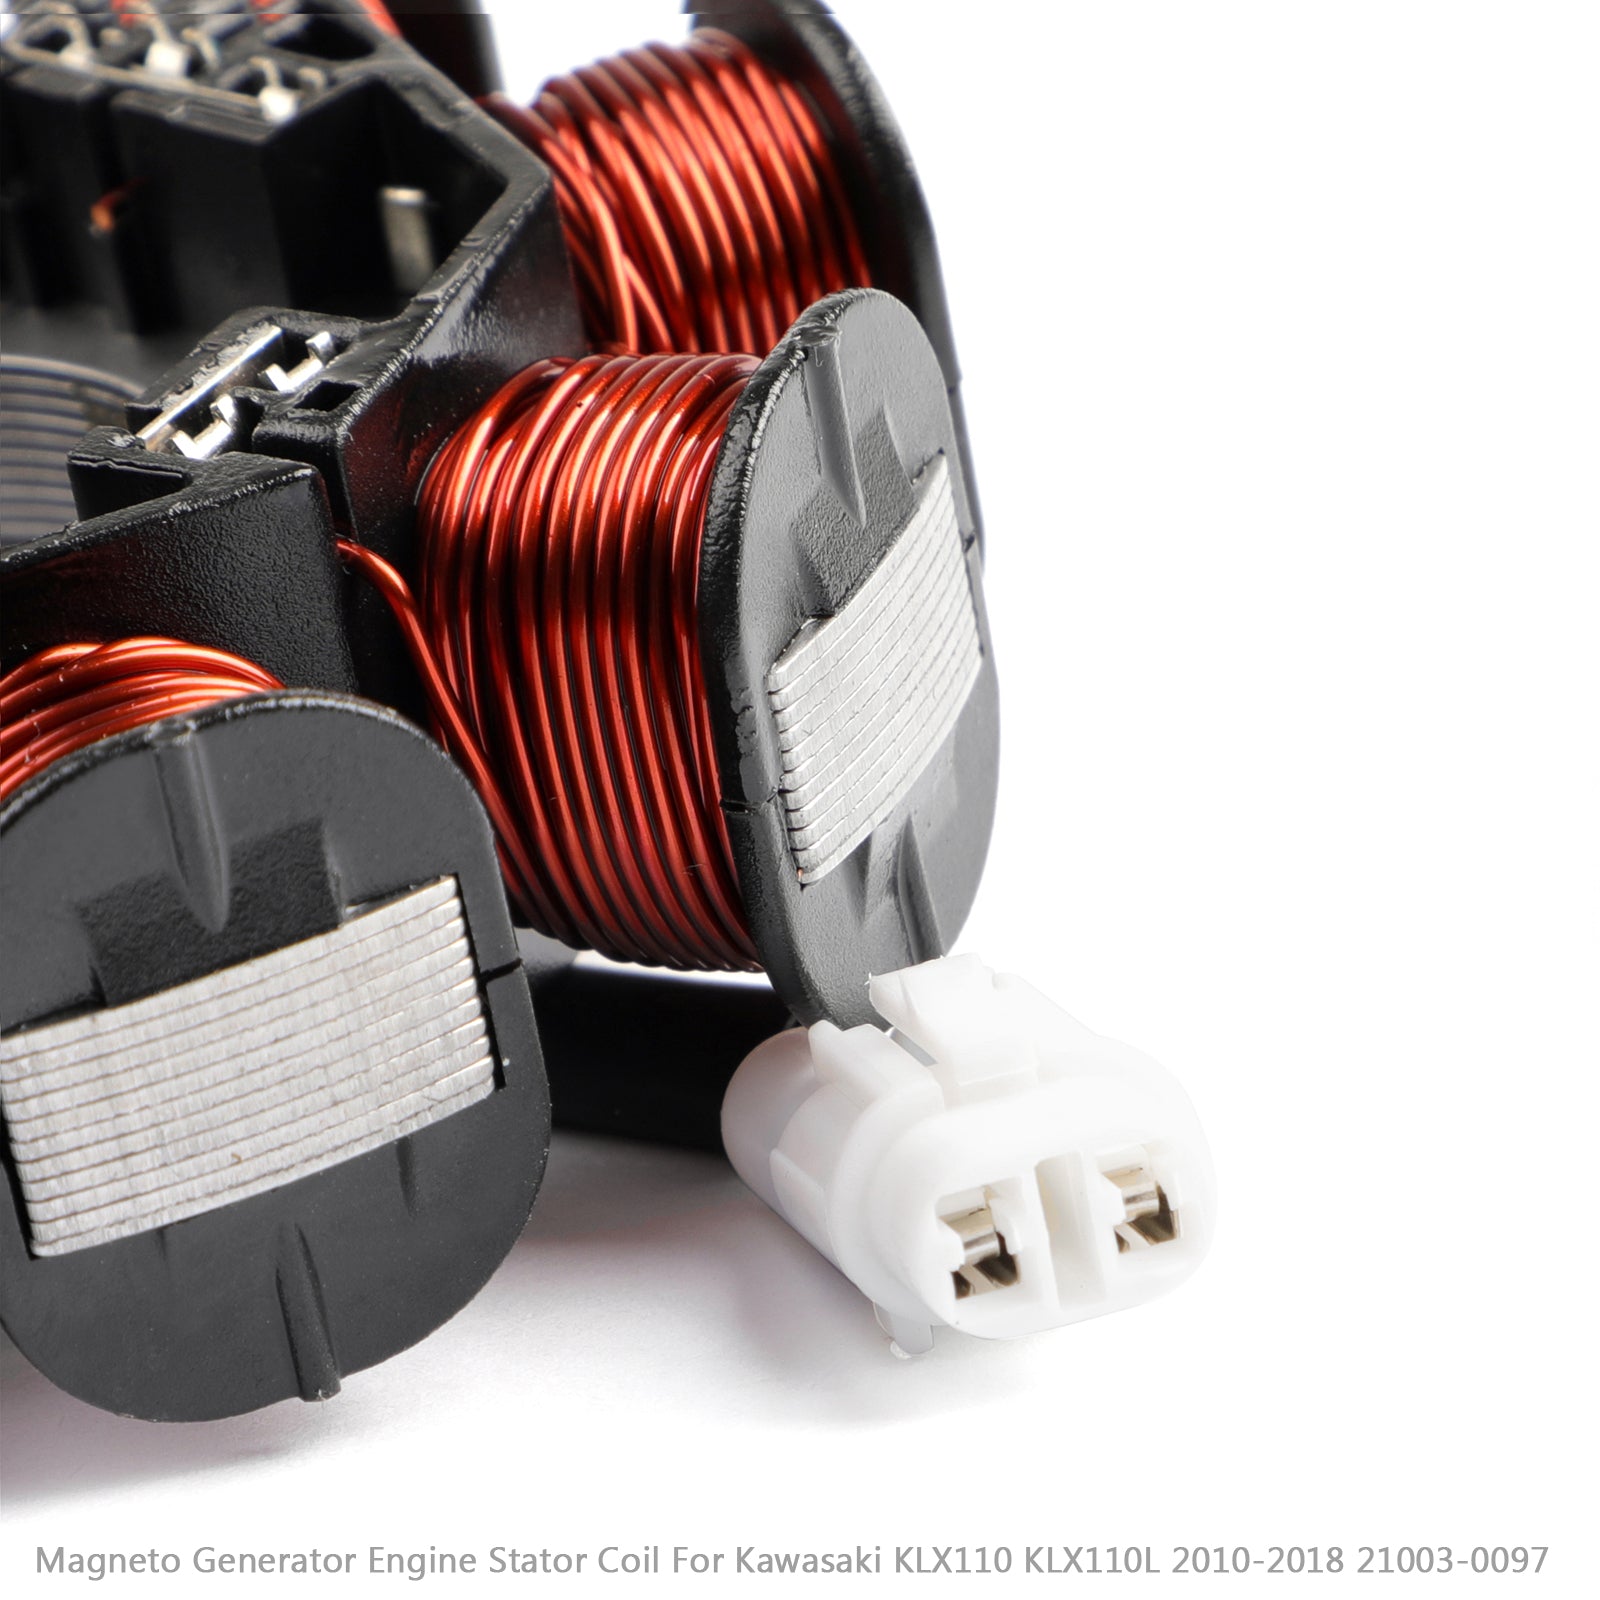 Magneto Generator Stator Coil For Kawasaki KLX110 KLX110L 2010-2018 21003-0097 via fedex